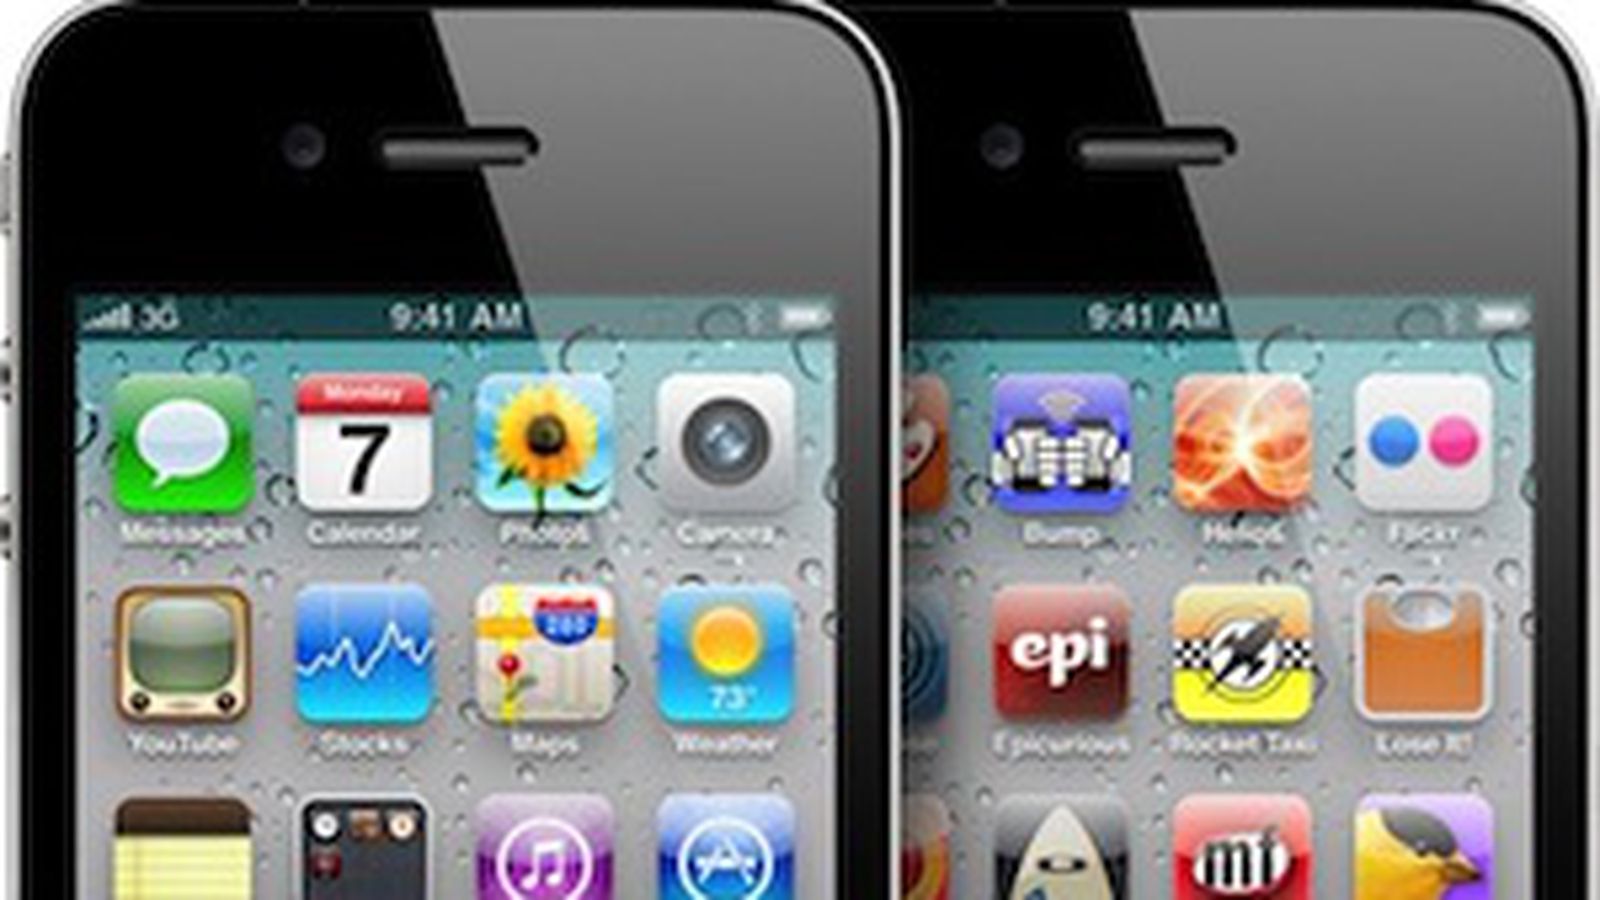 Khám phá lý do vì sao Steve Jobs lại tin tưởng rằng hình nền tùy chỉnh là một yếu tố quan trọng của trải nghiệm người dùng trong iOS 4 cho iPhone 3G. Hãy cùng nhìn ngắm vào những hình ảnh đẹp mắt và sáng tạo, và cảm nhận sự khác biệt lớn của trải nghiệm người dùng khi có được hình nền tùy chỉnh độc đáo và thu hút.